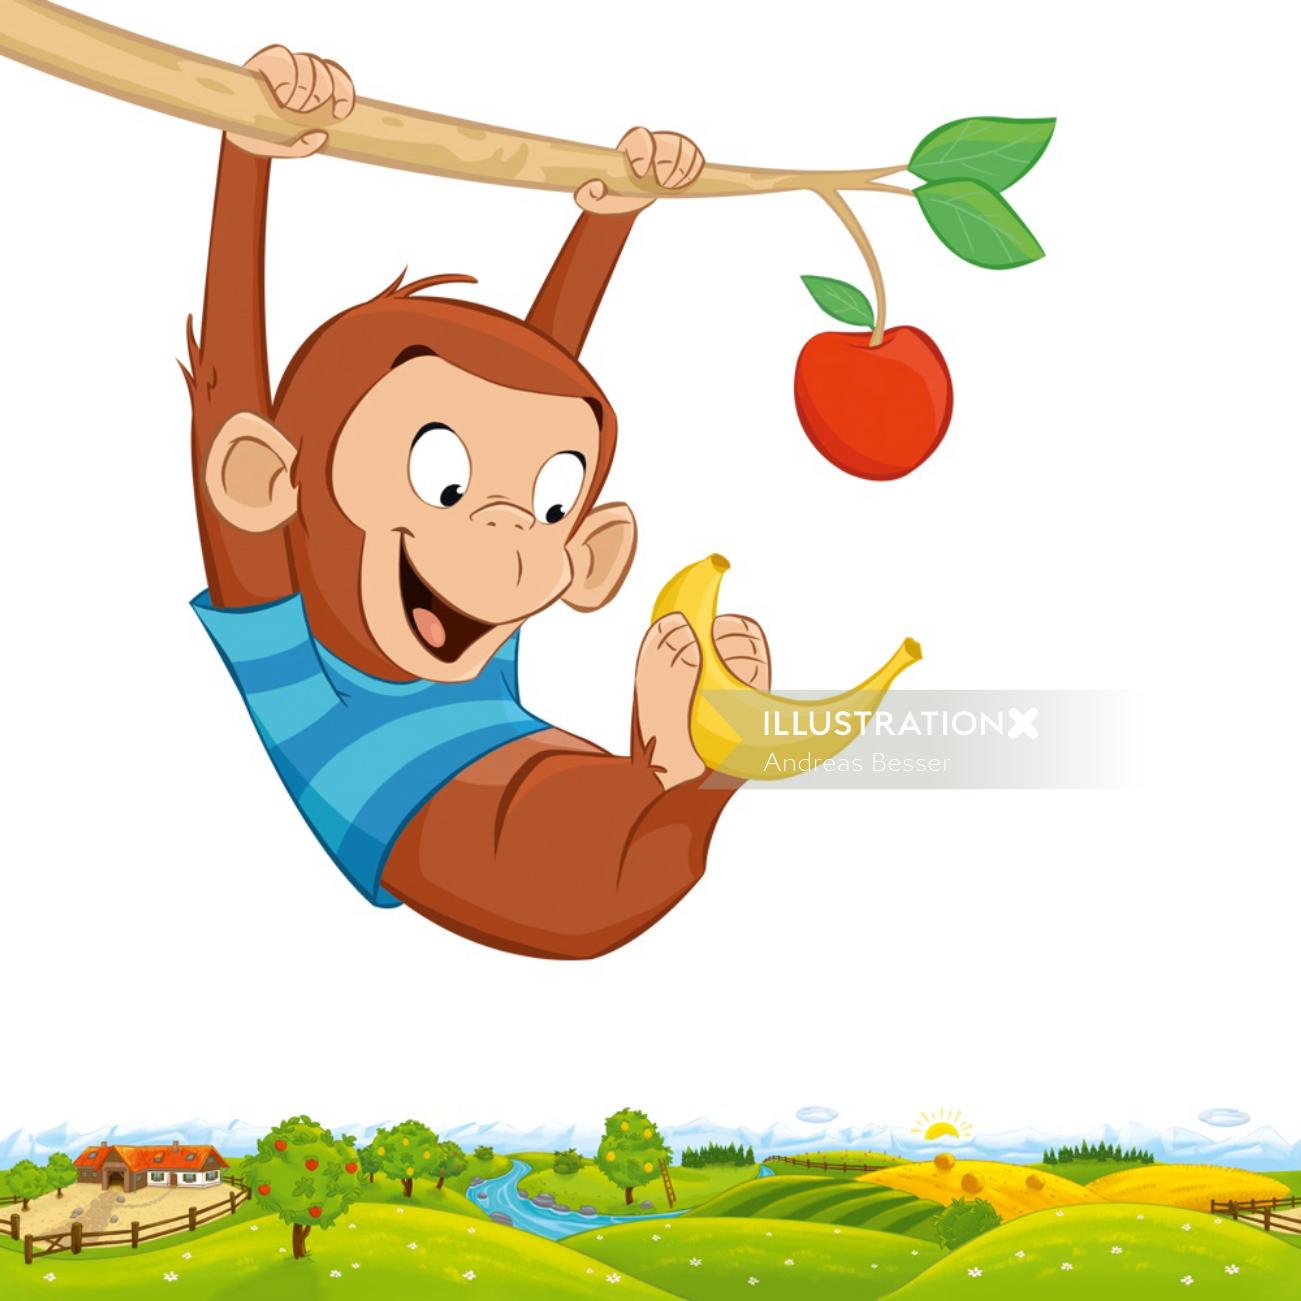 Cartoon monkey holding banana